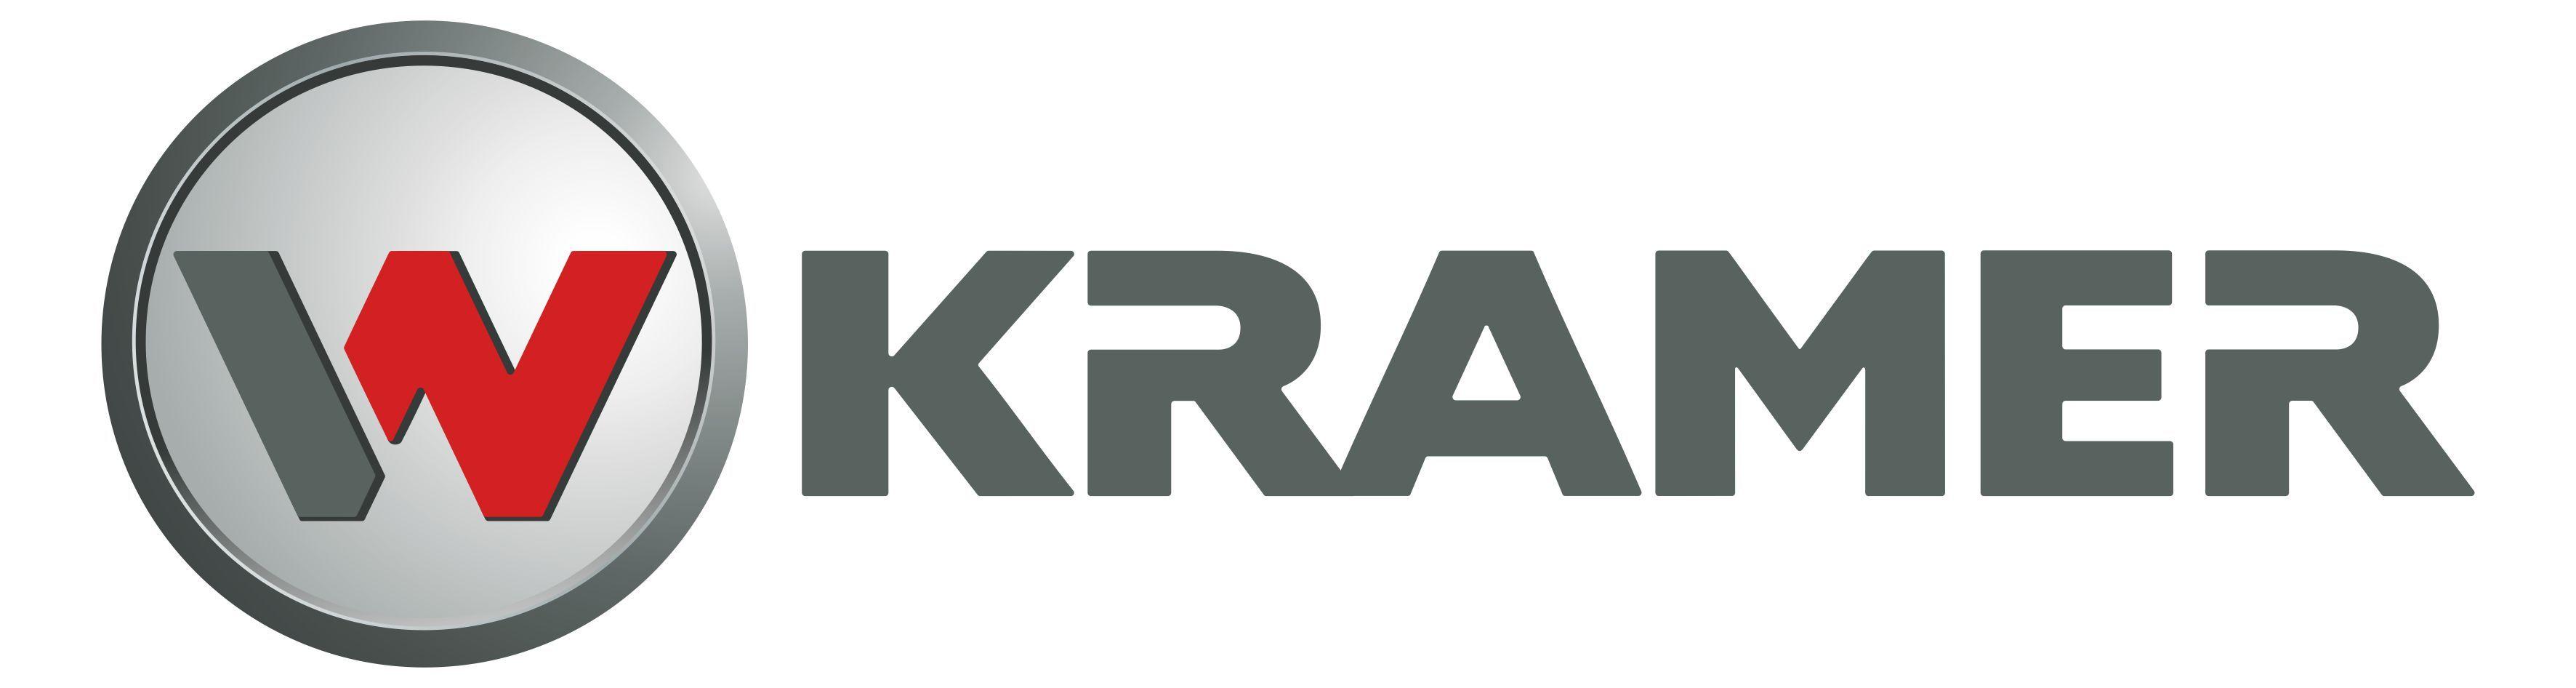 Kramer Logo - Kramer